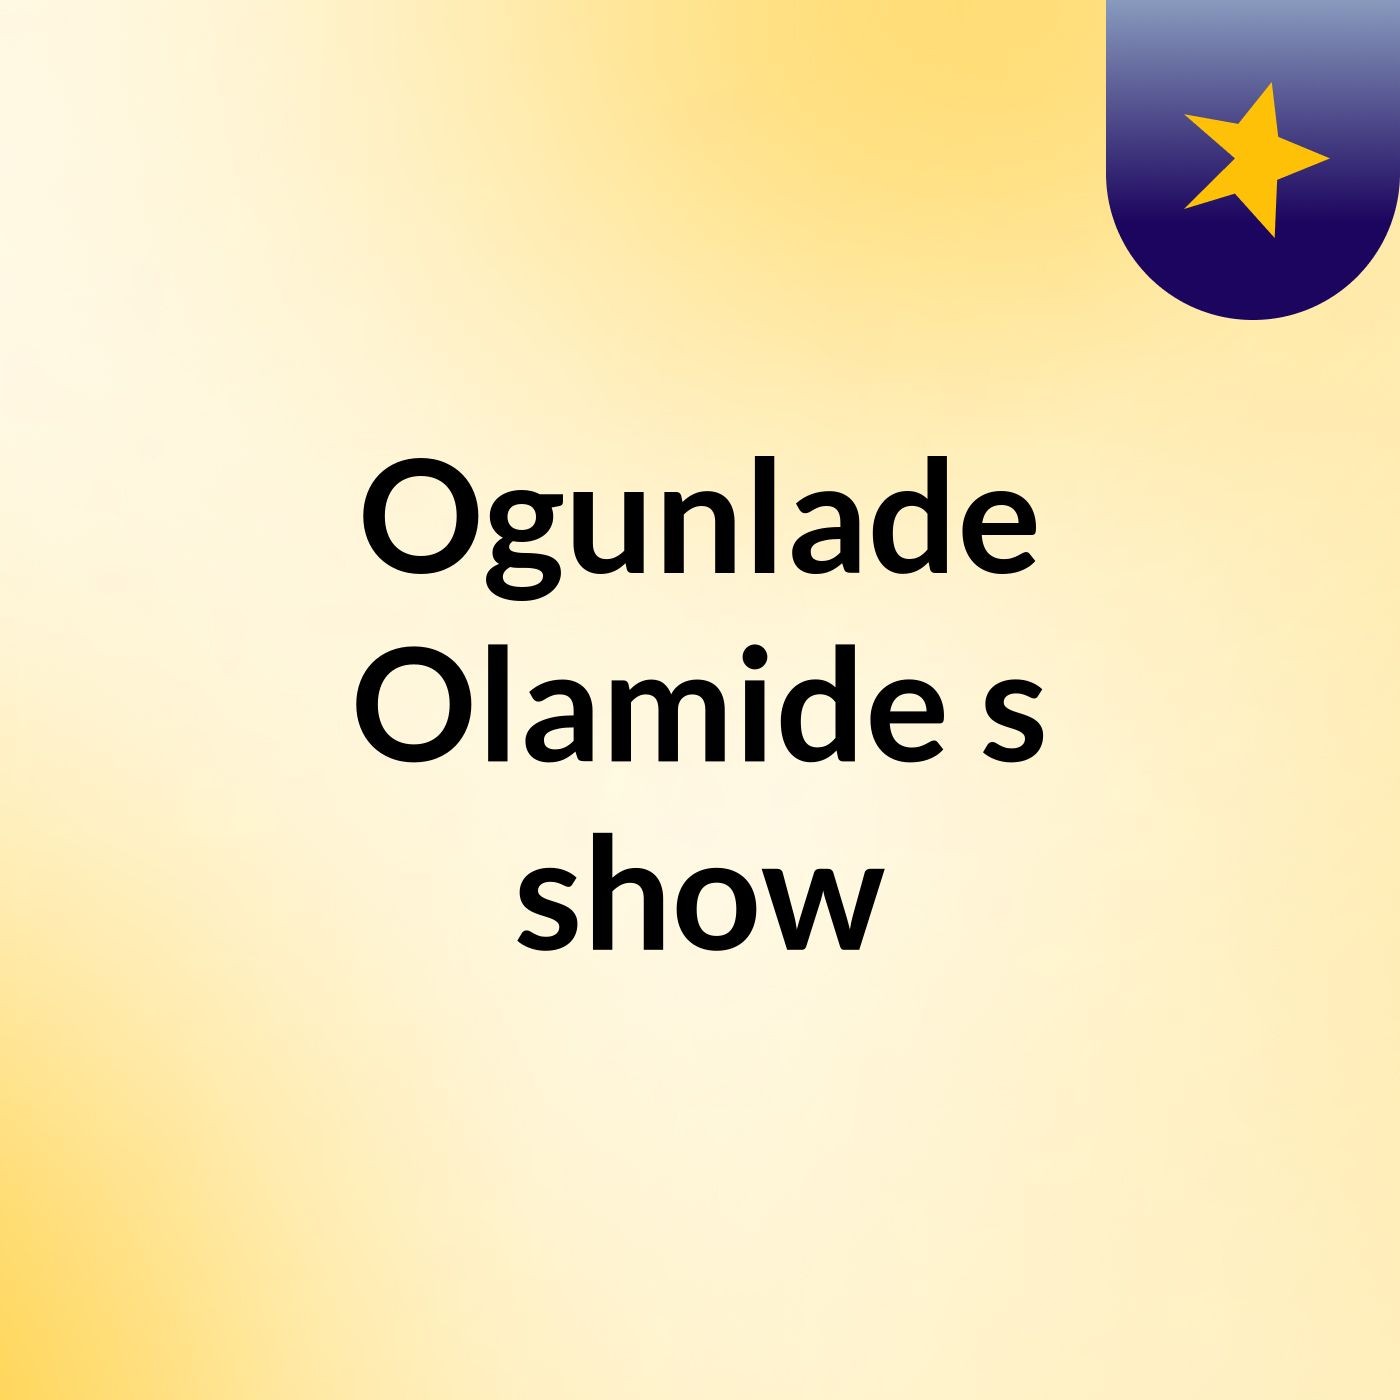 Ogunlade Olamide's show